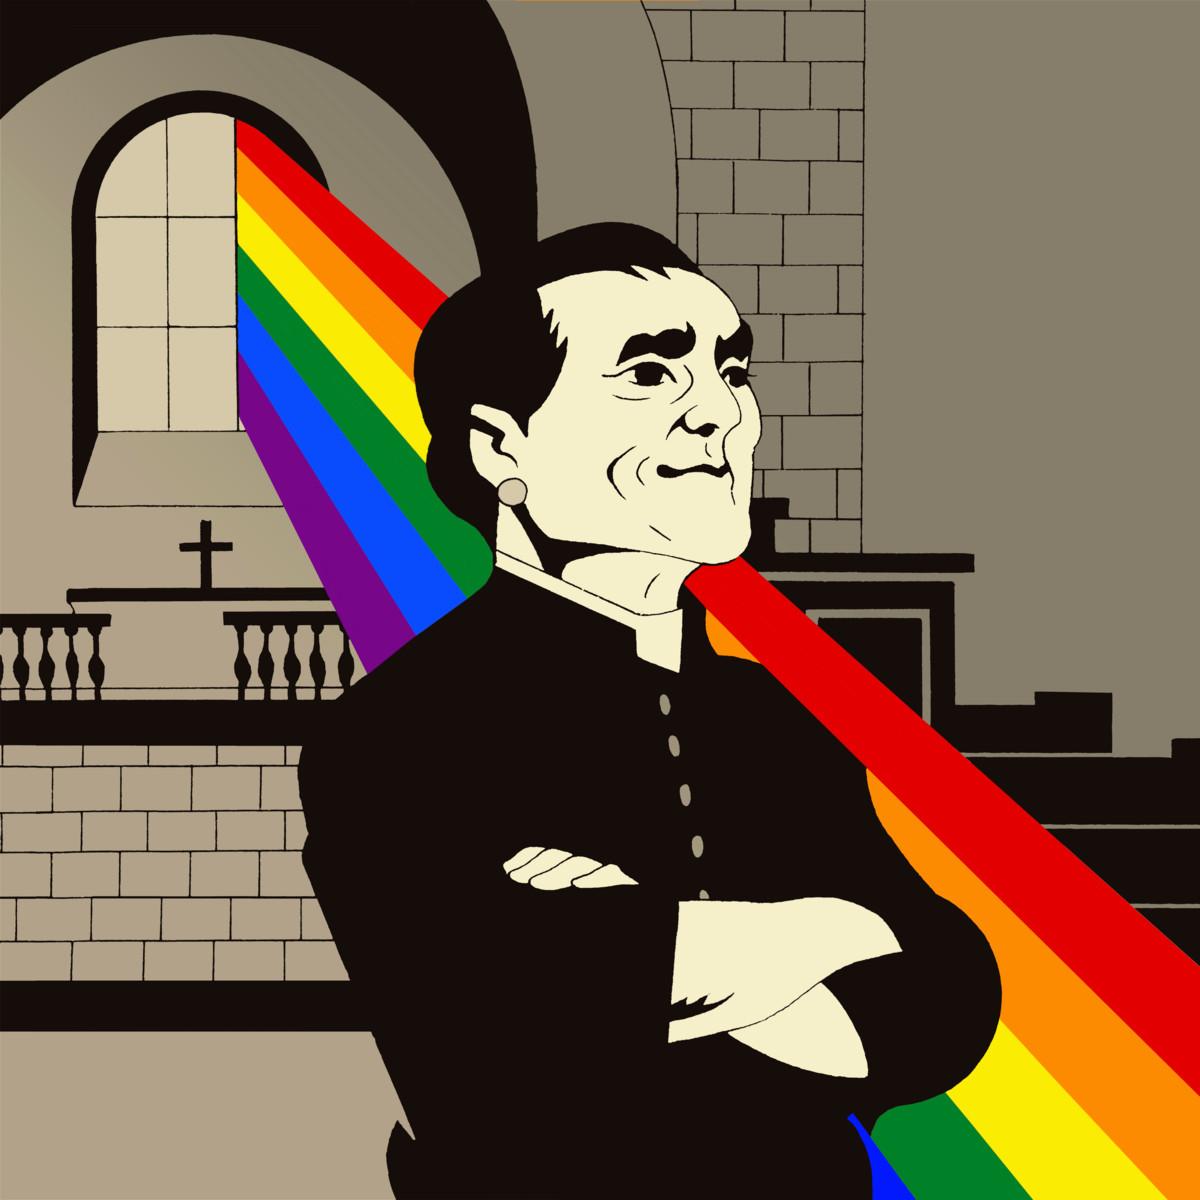 Teologian kandidaatti Ari Saukkonen sanoi vuonna 1992, että homokeskustelu on jämähtänyt kirkossa paikoilleen. ”Vikaa on meissäkin, kun suostumme syrjintään”, hän sanoi sateenkaari-ihmisten tilaisuudessa.